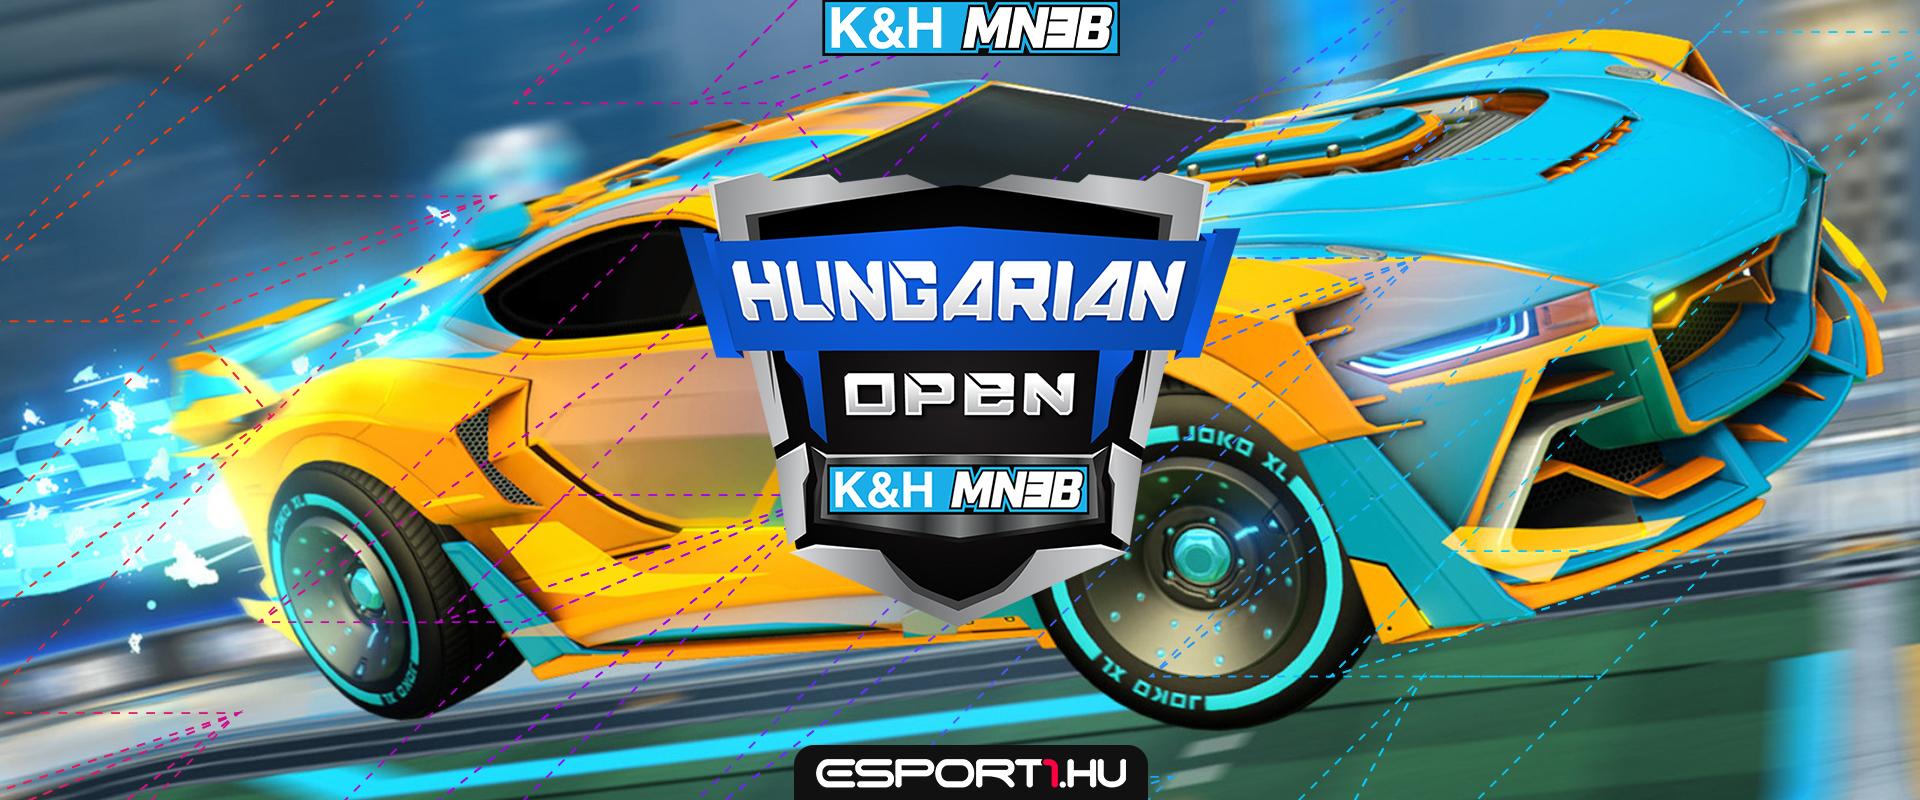 A 6. fordulóval, ezen a hétvégén ér véget a Hungarian Open csoportköre, mutatjuk a párosításokat